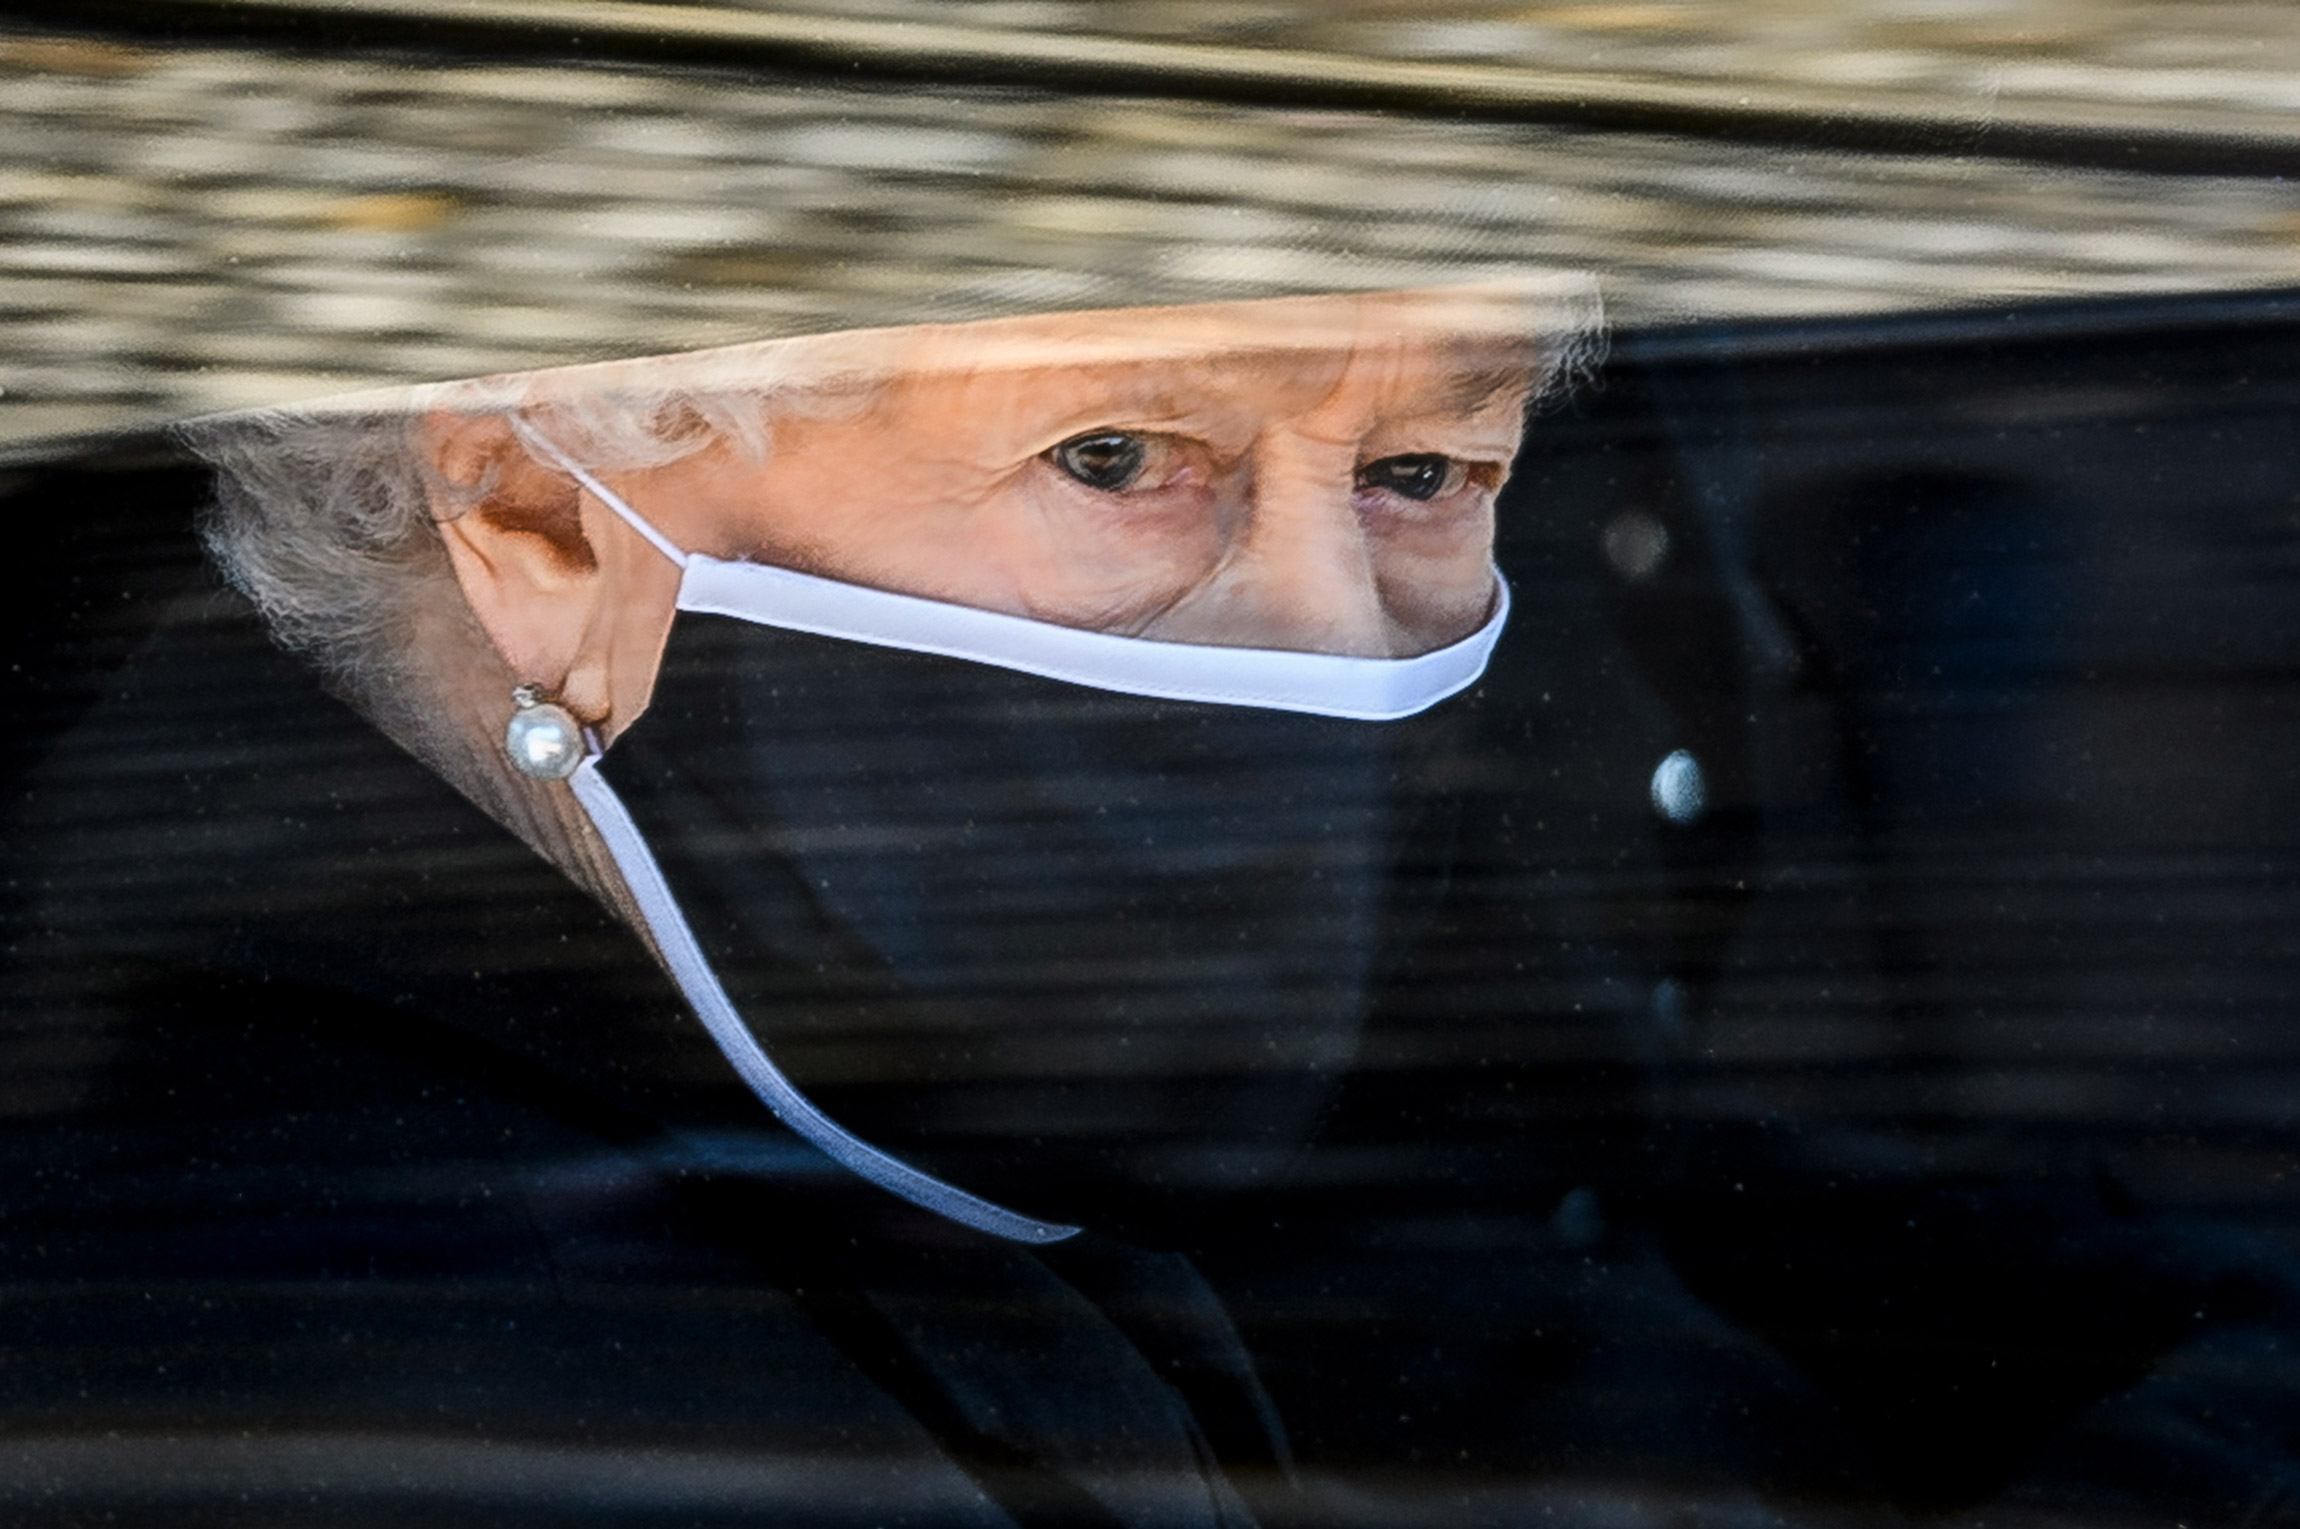 Королева Великобритании Елизавета II в автомобиле, следующем за гробом ее супруга принца Филиппа в день его похорон. 17 апреля, Виндзор.

В этом&nbsp;же году королева встретила свой&nbsp;95-летний юбилей, а в 2022-м&nbsp;страна собирается отметить 70-летие ее пребывания на троне